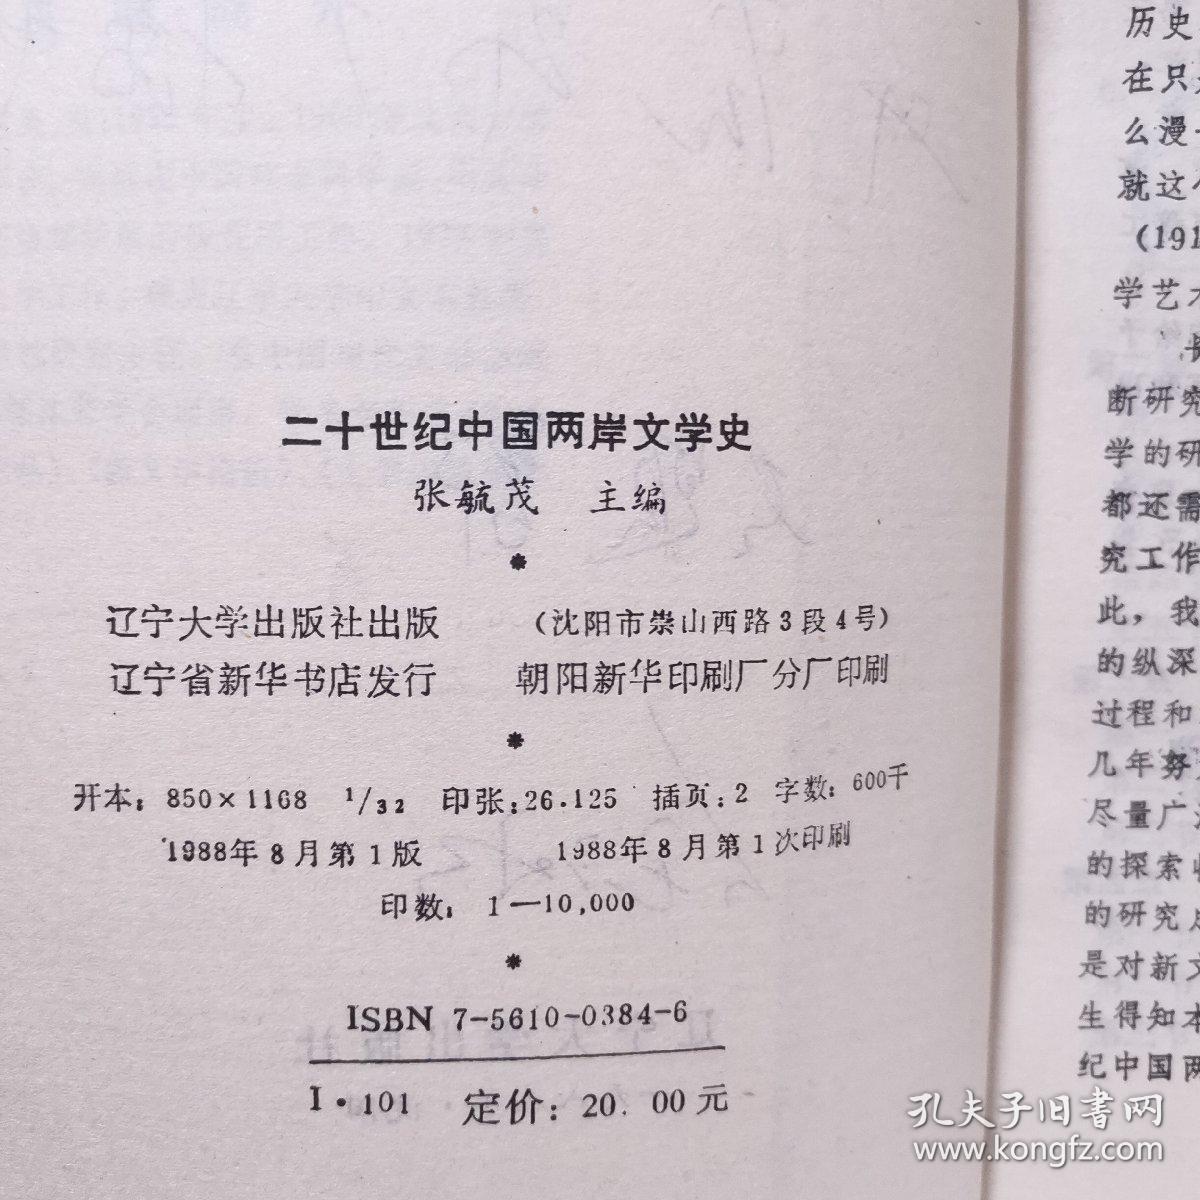 二十世纪中国两岸文学史